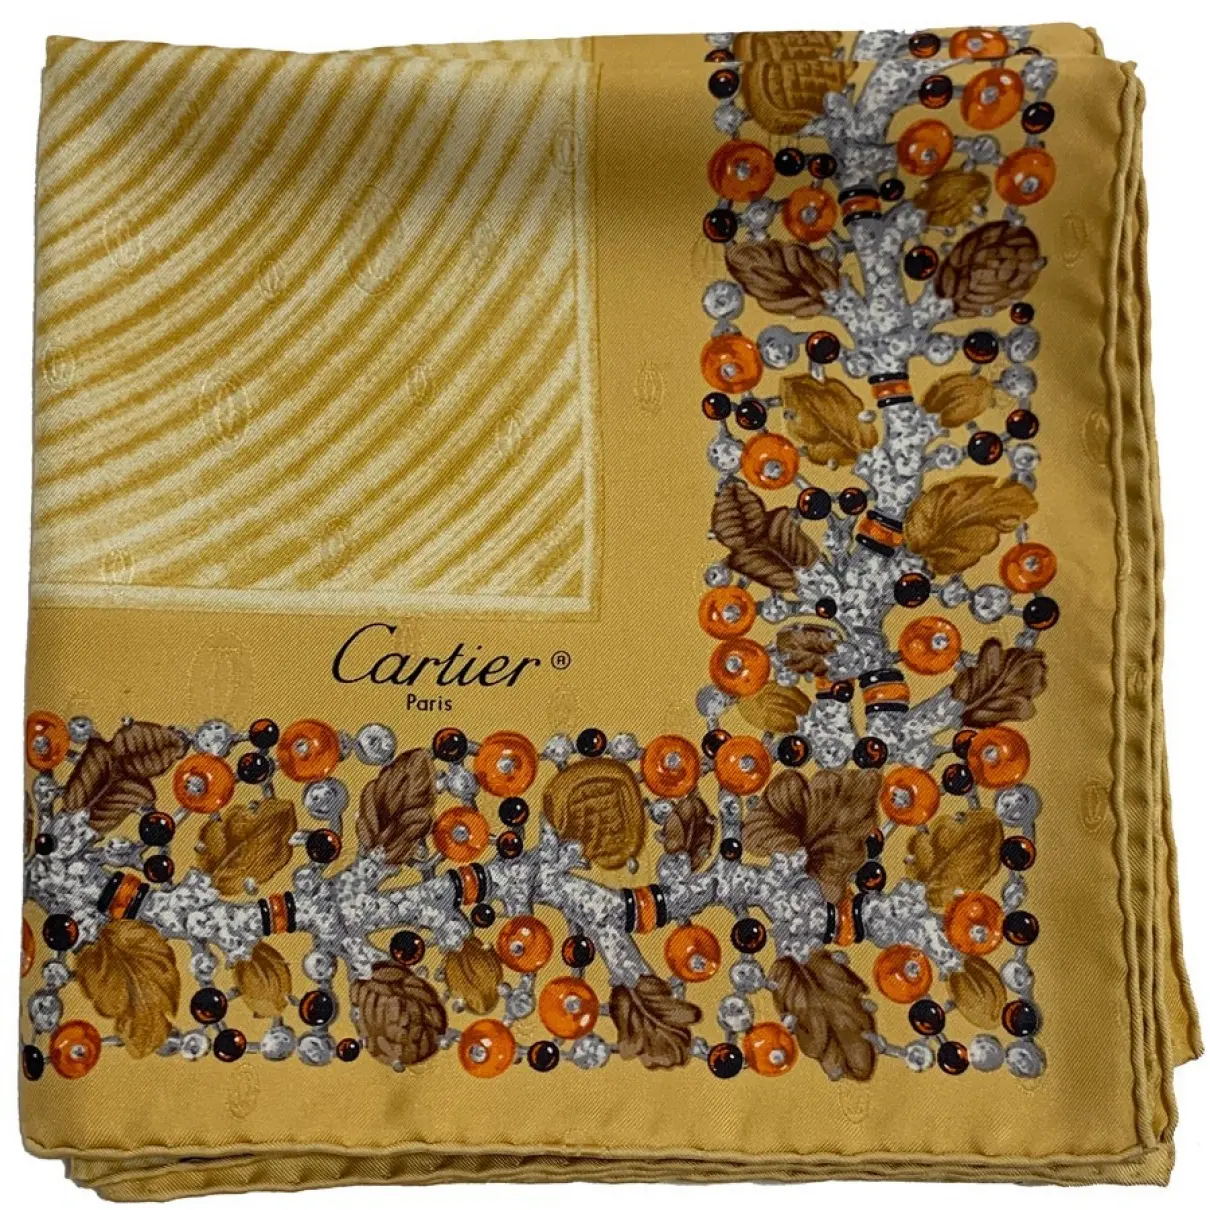 Cartier Silk handkerchief for sale - Vintage